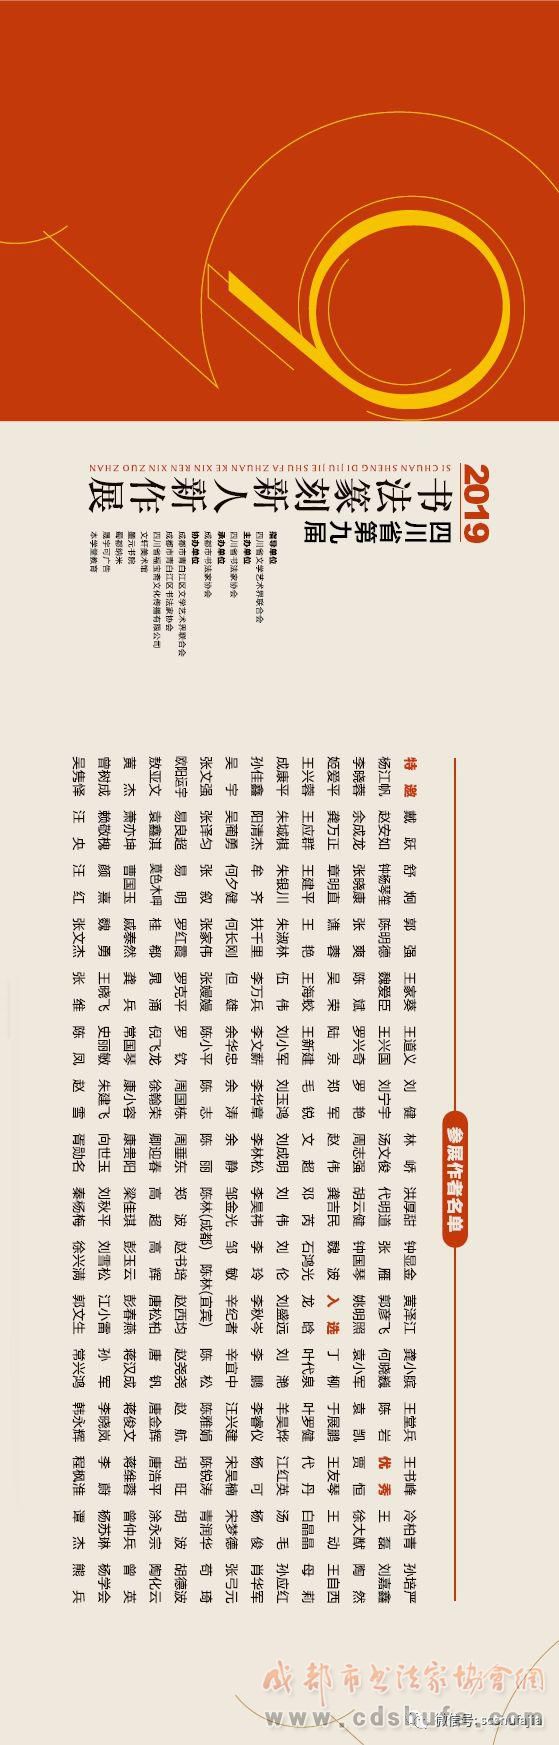 【展讯】四川省第九届书法篆刻新人新作展将于11月6日上午10时在文轩美术馆举行开幕式 - 协会动态 - 成都市书法家协会